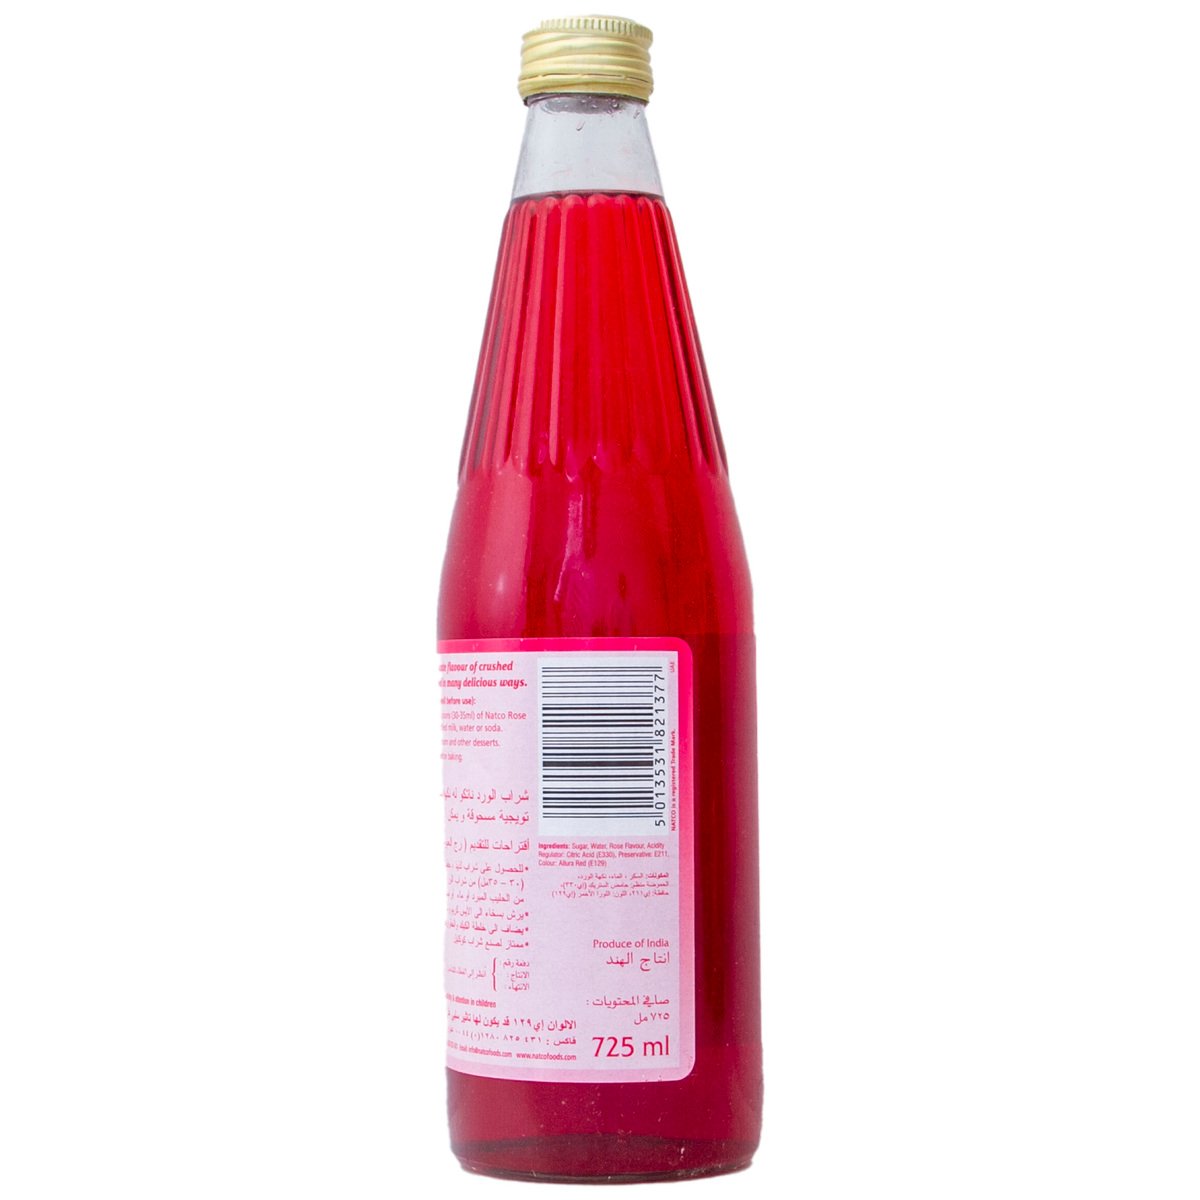 Natco Original Rose Syrup 725 ml